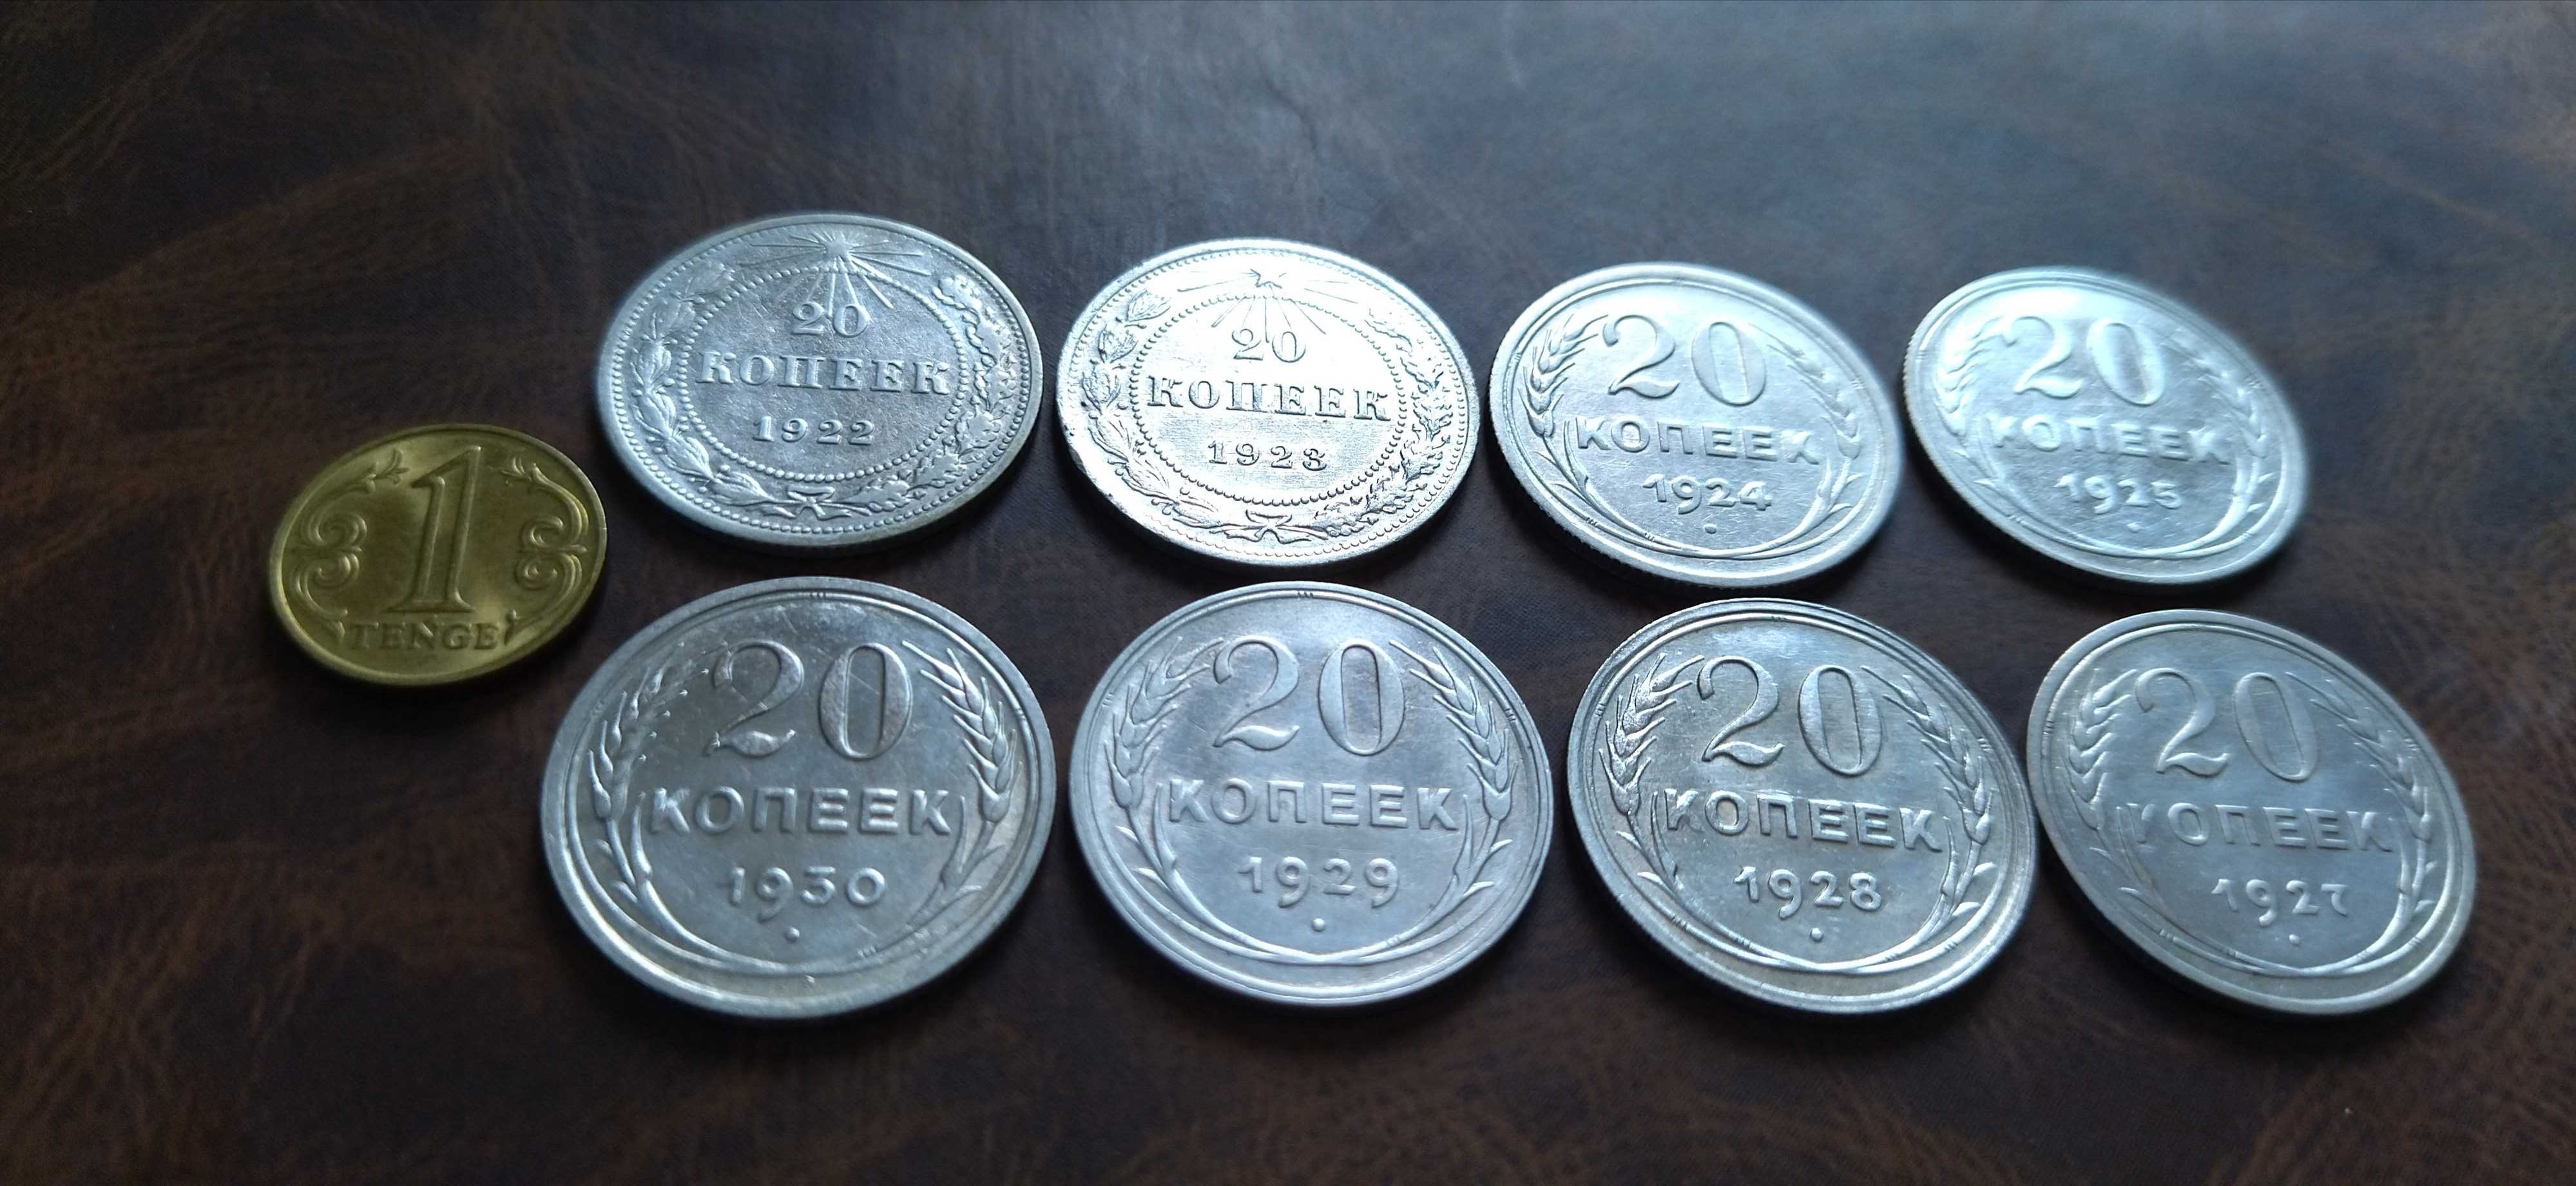 монеты советское серебро  (беллон)  коллекционные в штемпельном блеске